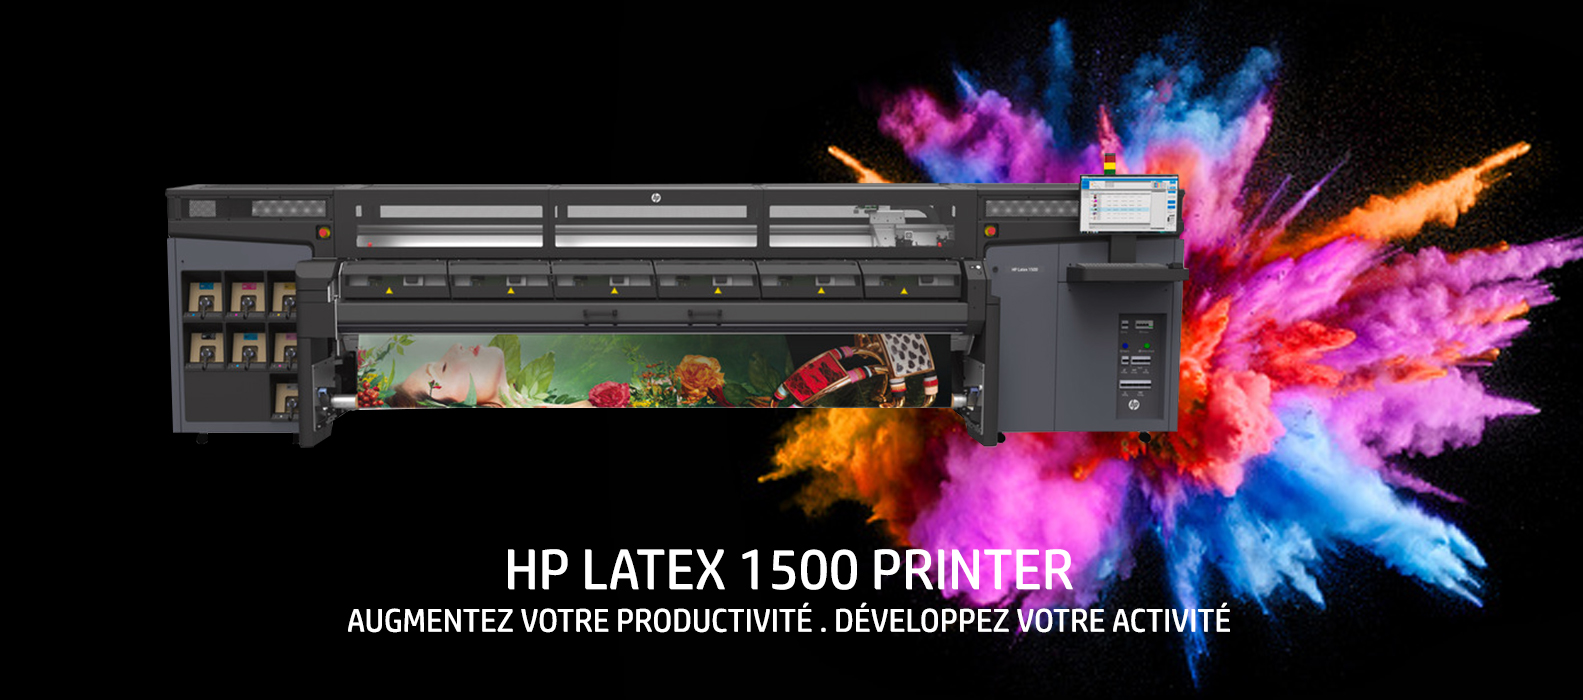 HP LATEX 1500